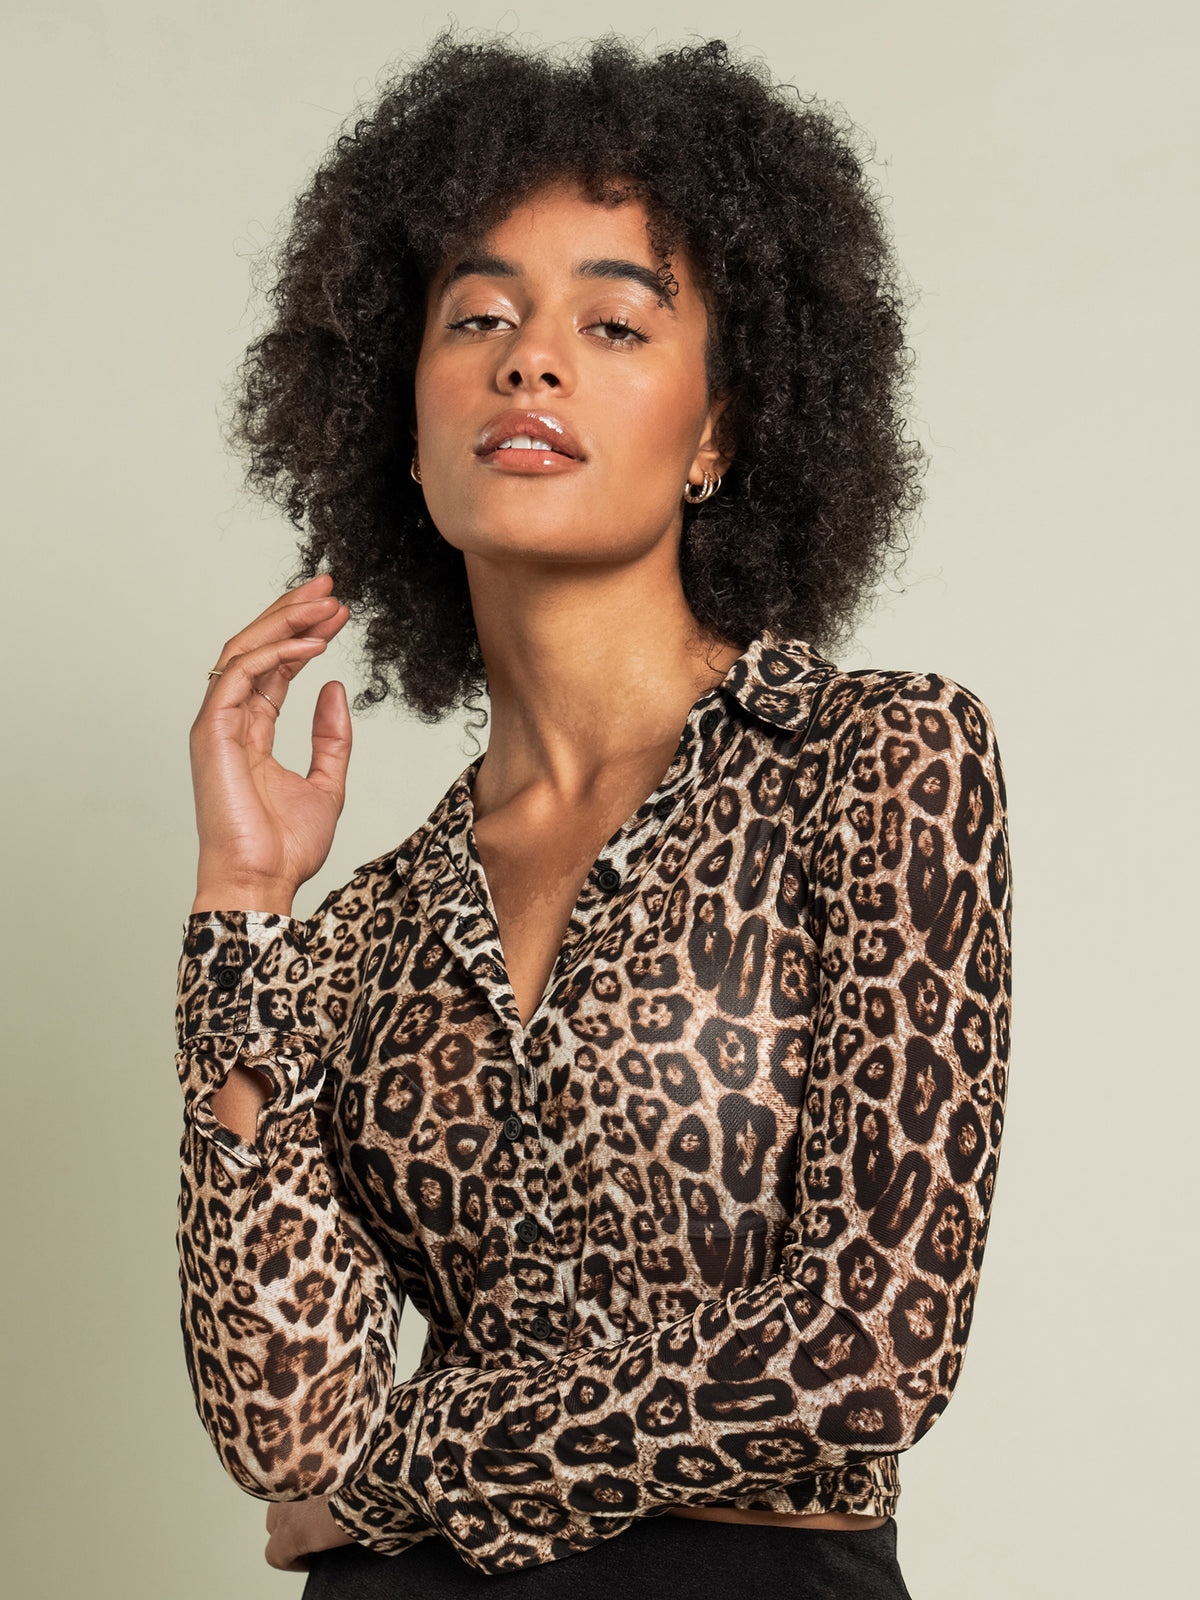 Samara Sheer Shirt in Leopard Print